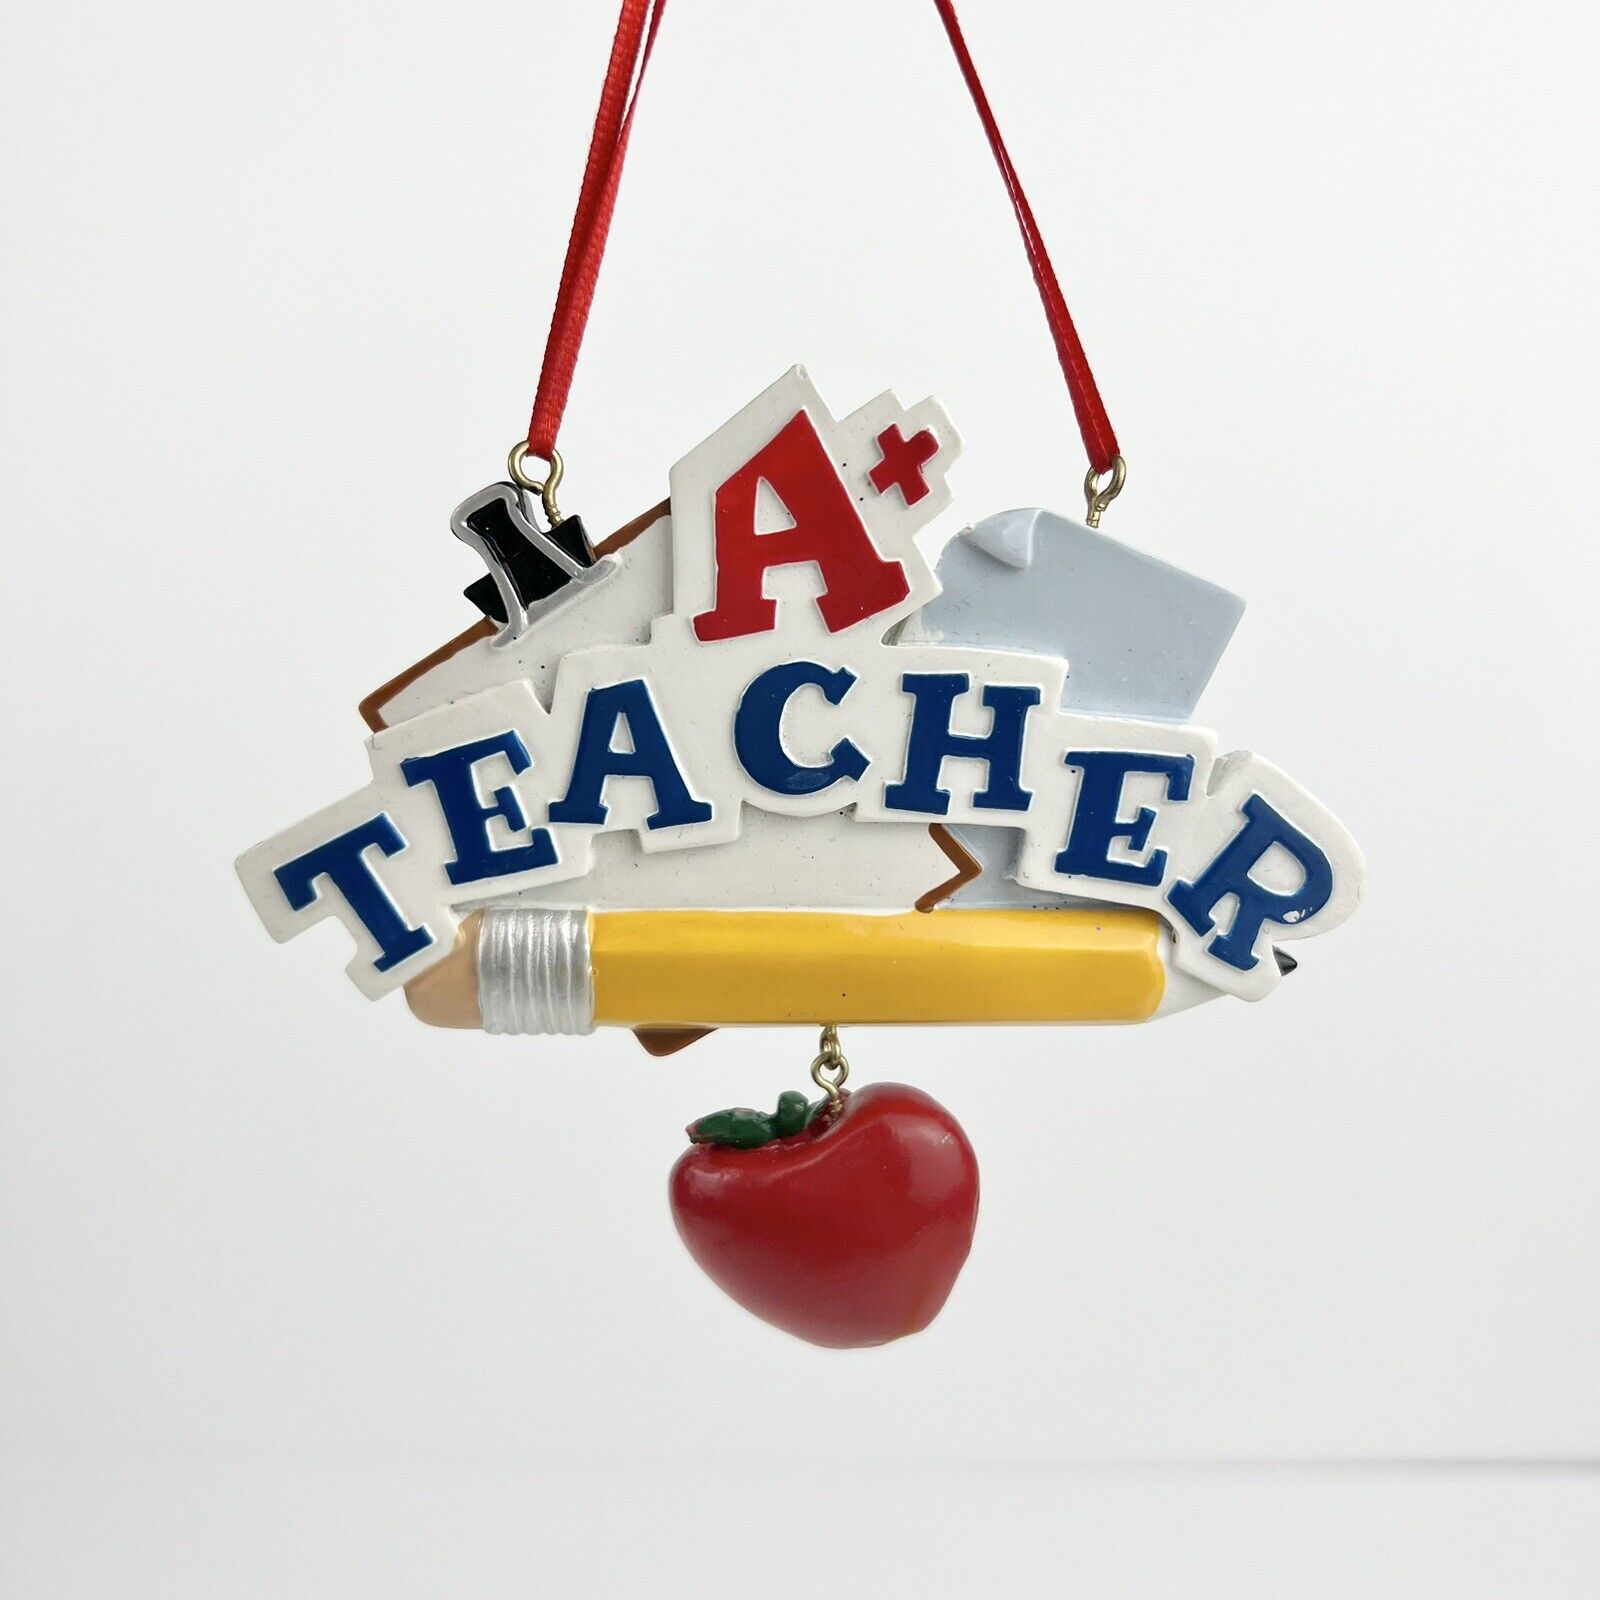 A+ Teacher Christmas Ornament Kurt Adler Designed By Holly Adler W Hanging Apple